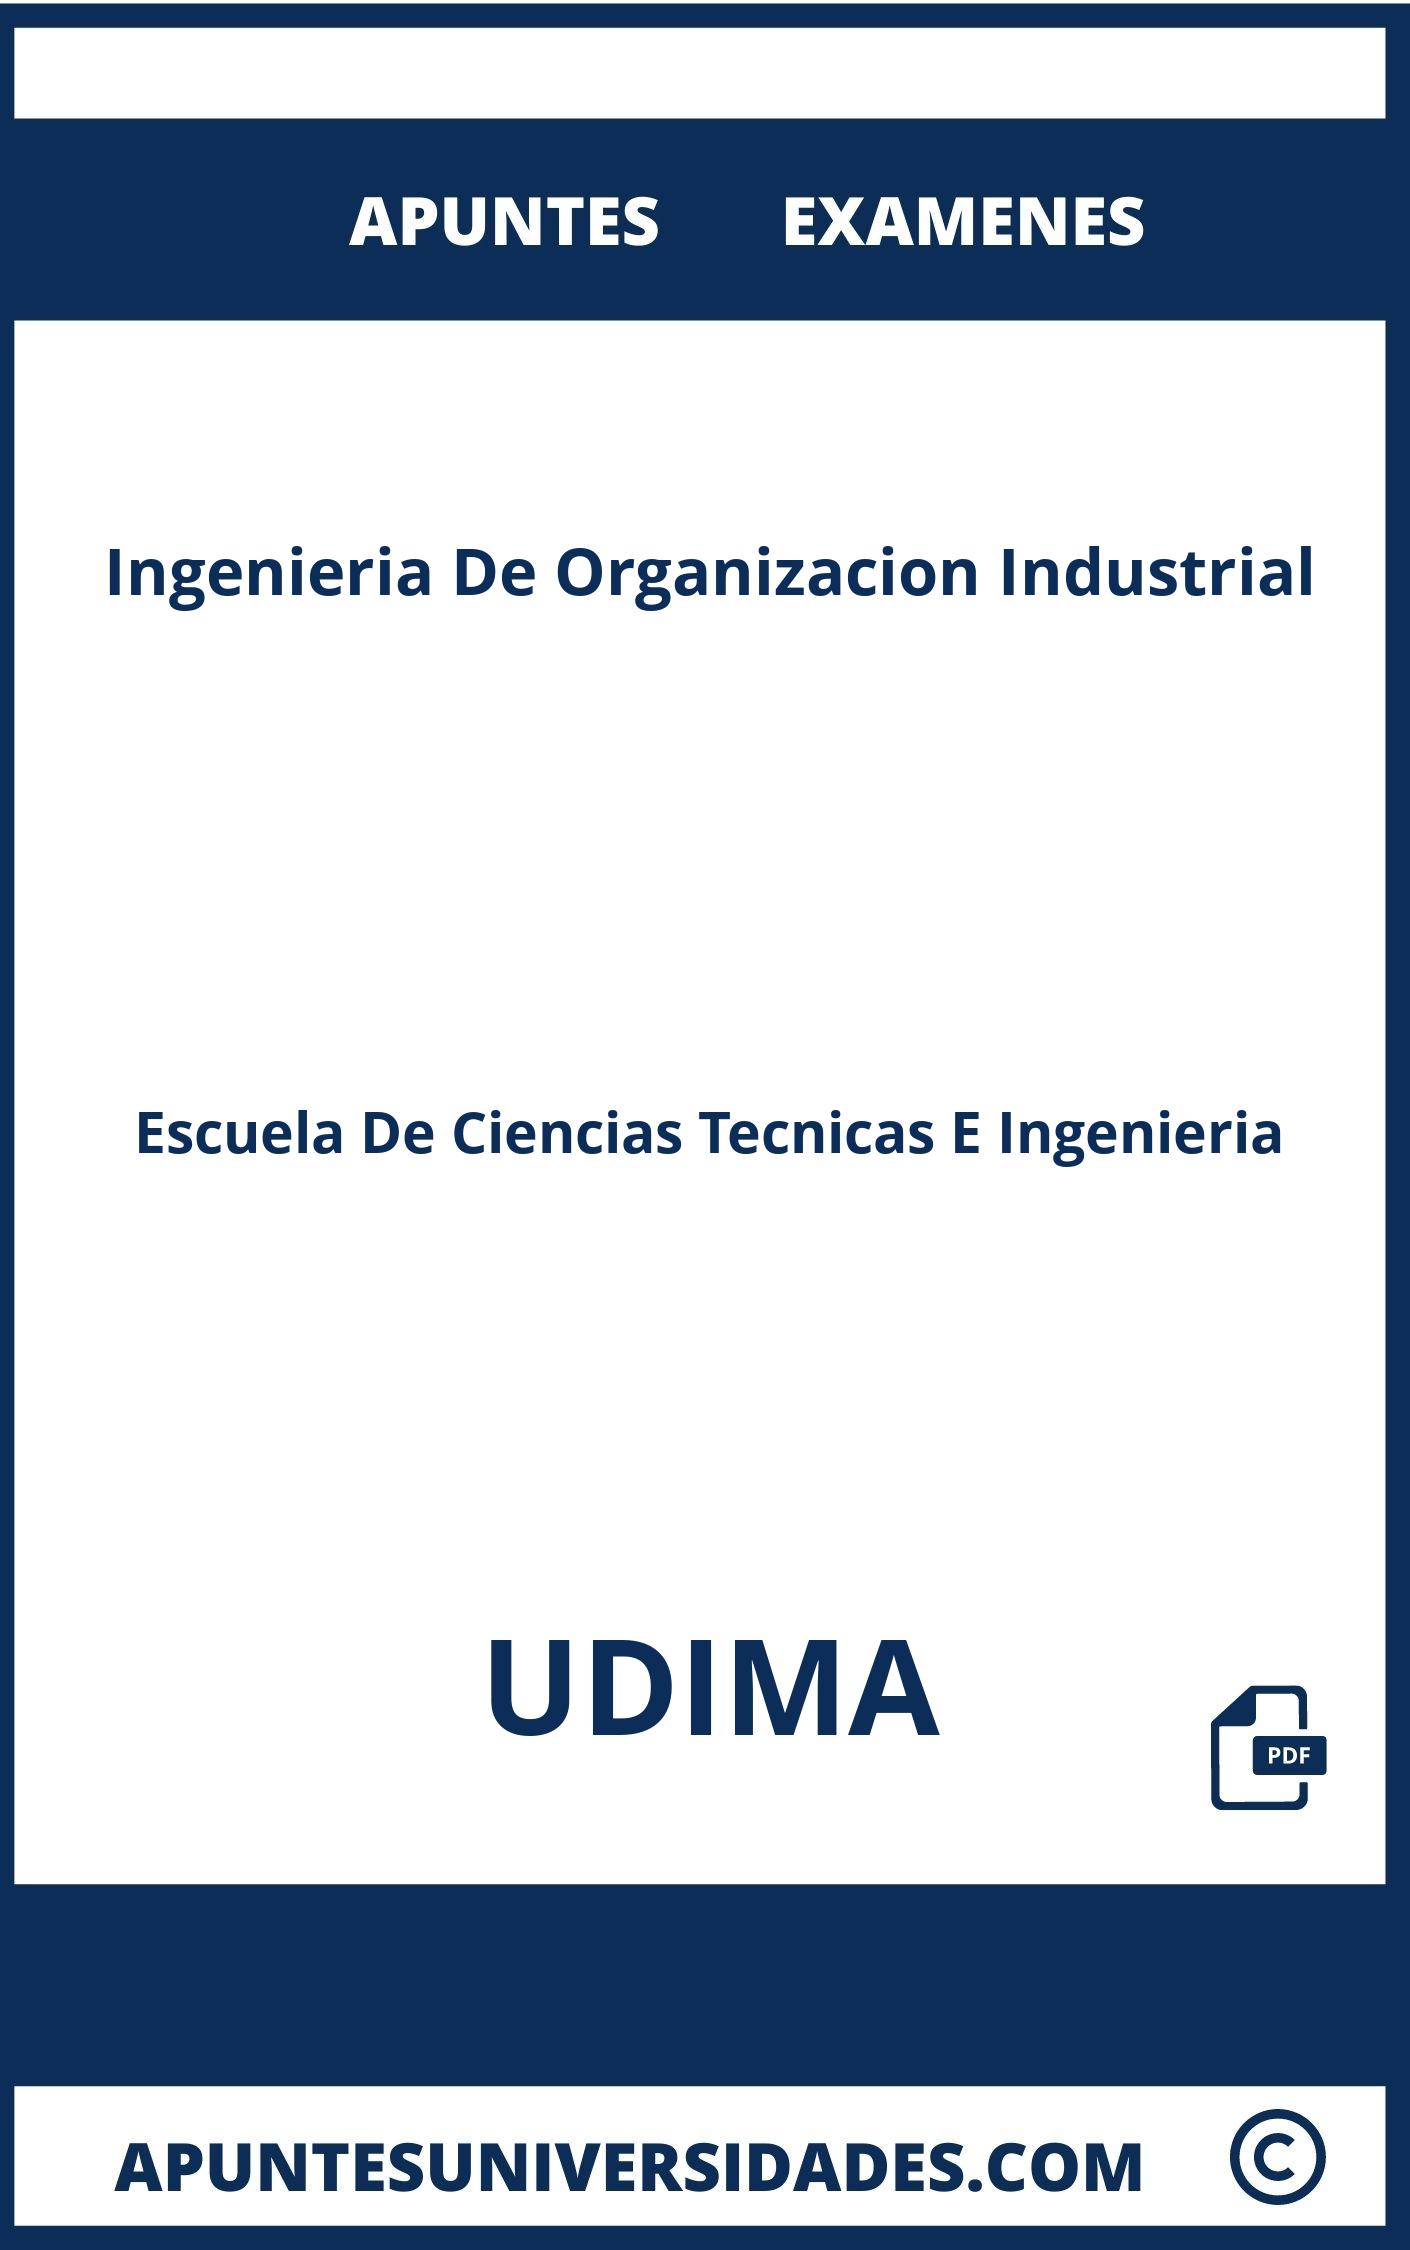 Examenes y Apuntes de Ingenieria De Organizacion Industrial UDIMA